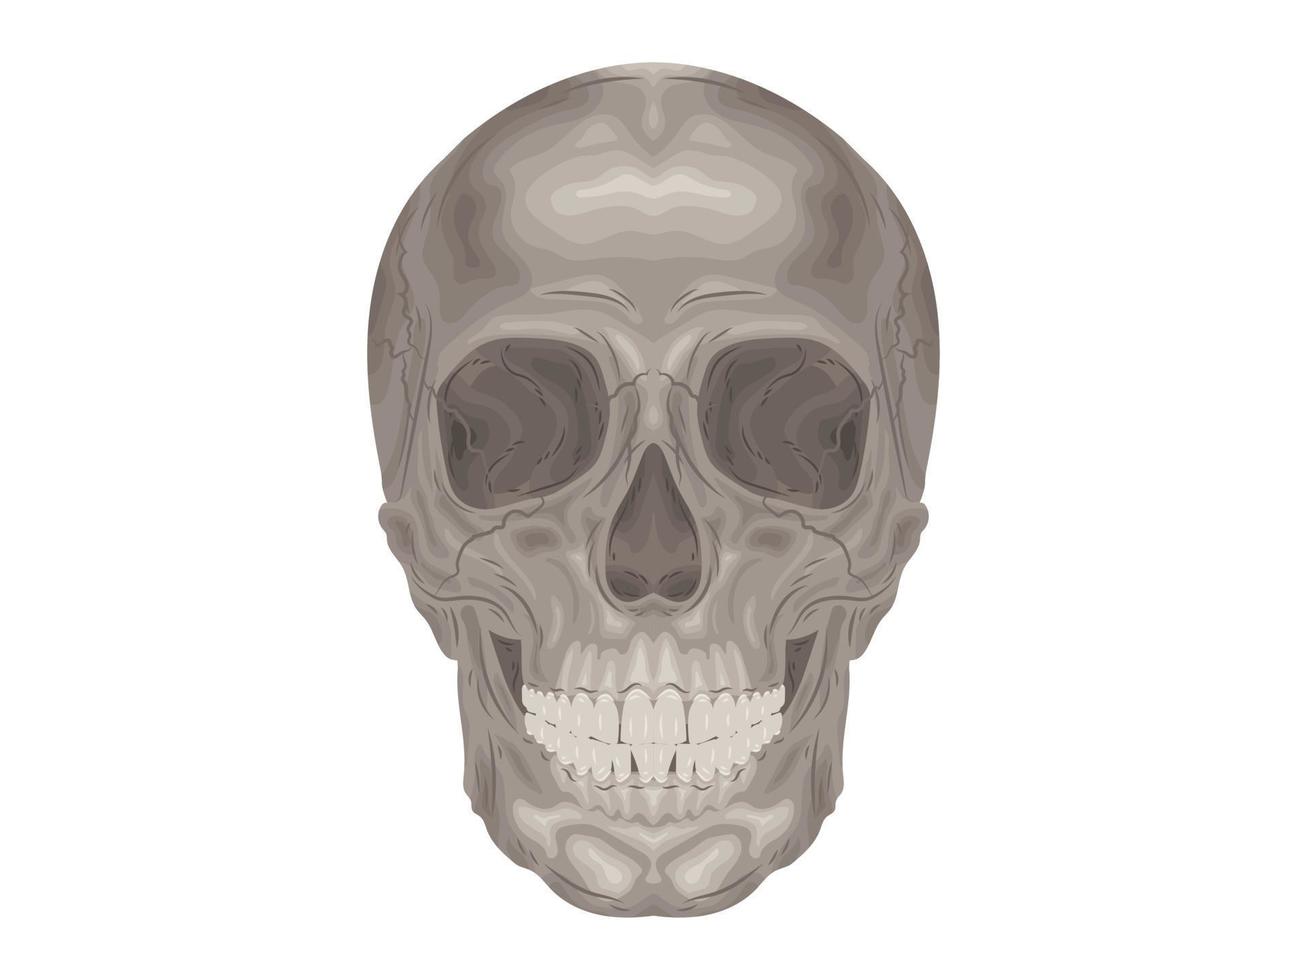 element calcium dokter therapie lichaam wetenschap cartoon anatomie chirurgie biologie bot schedel skelet plat vector